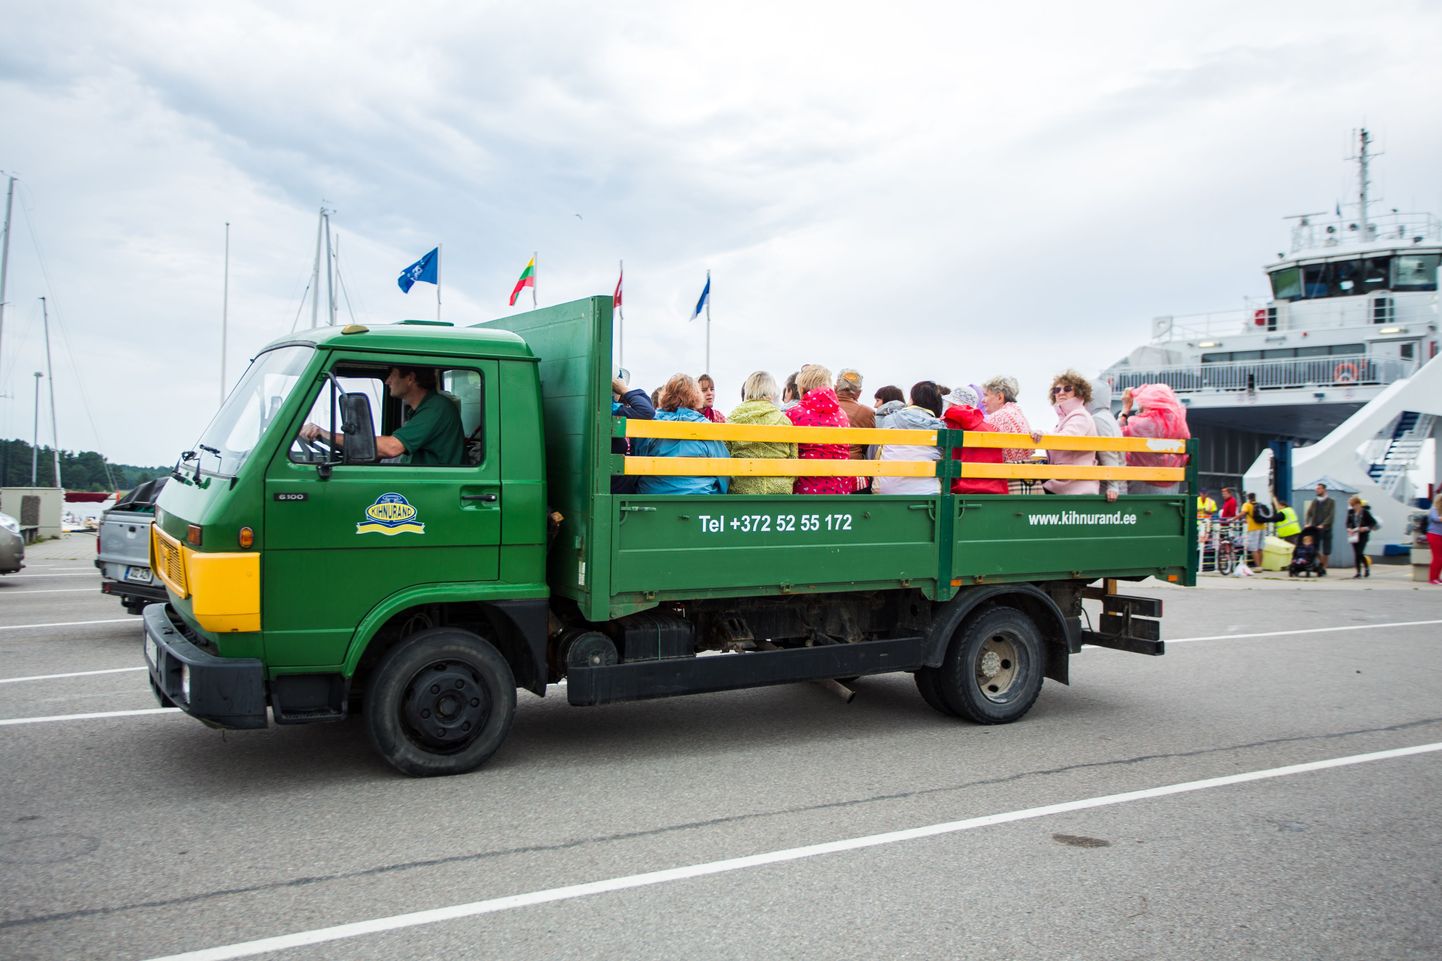 Kihnu Virve on sadamasse toonud turismigrupid, mis alustavad Liivi lahe suurima saarega tutvumist giidi saatel veoauto kastis.